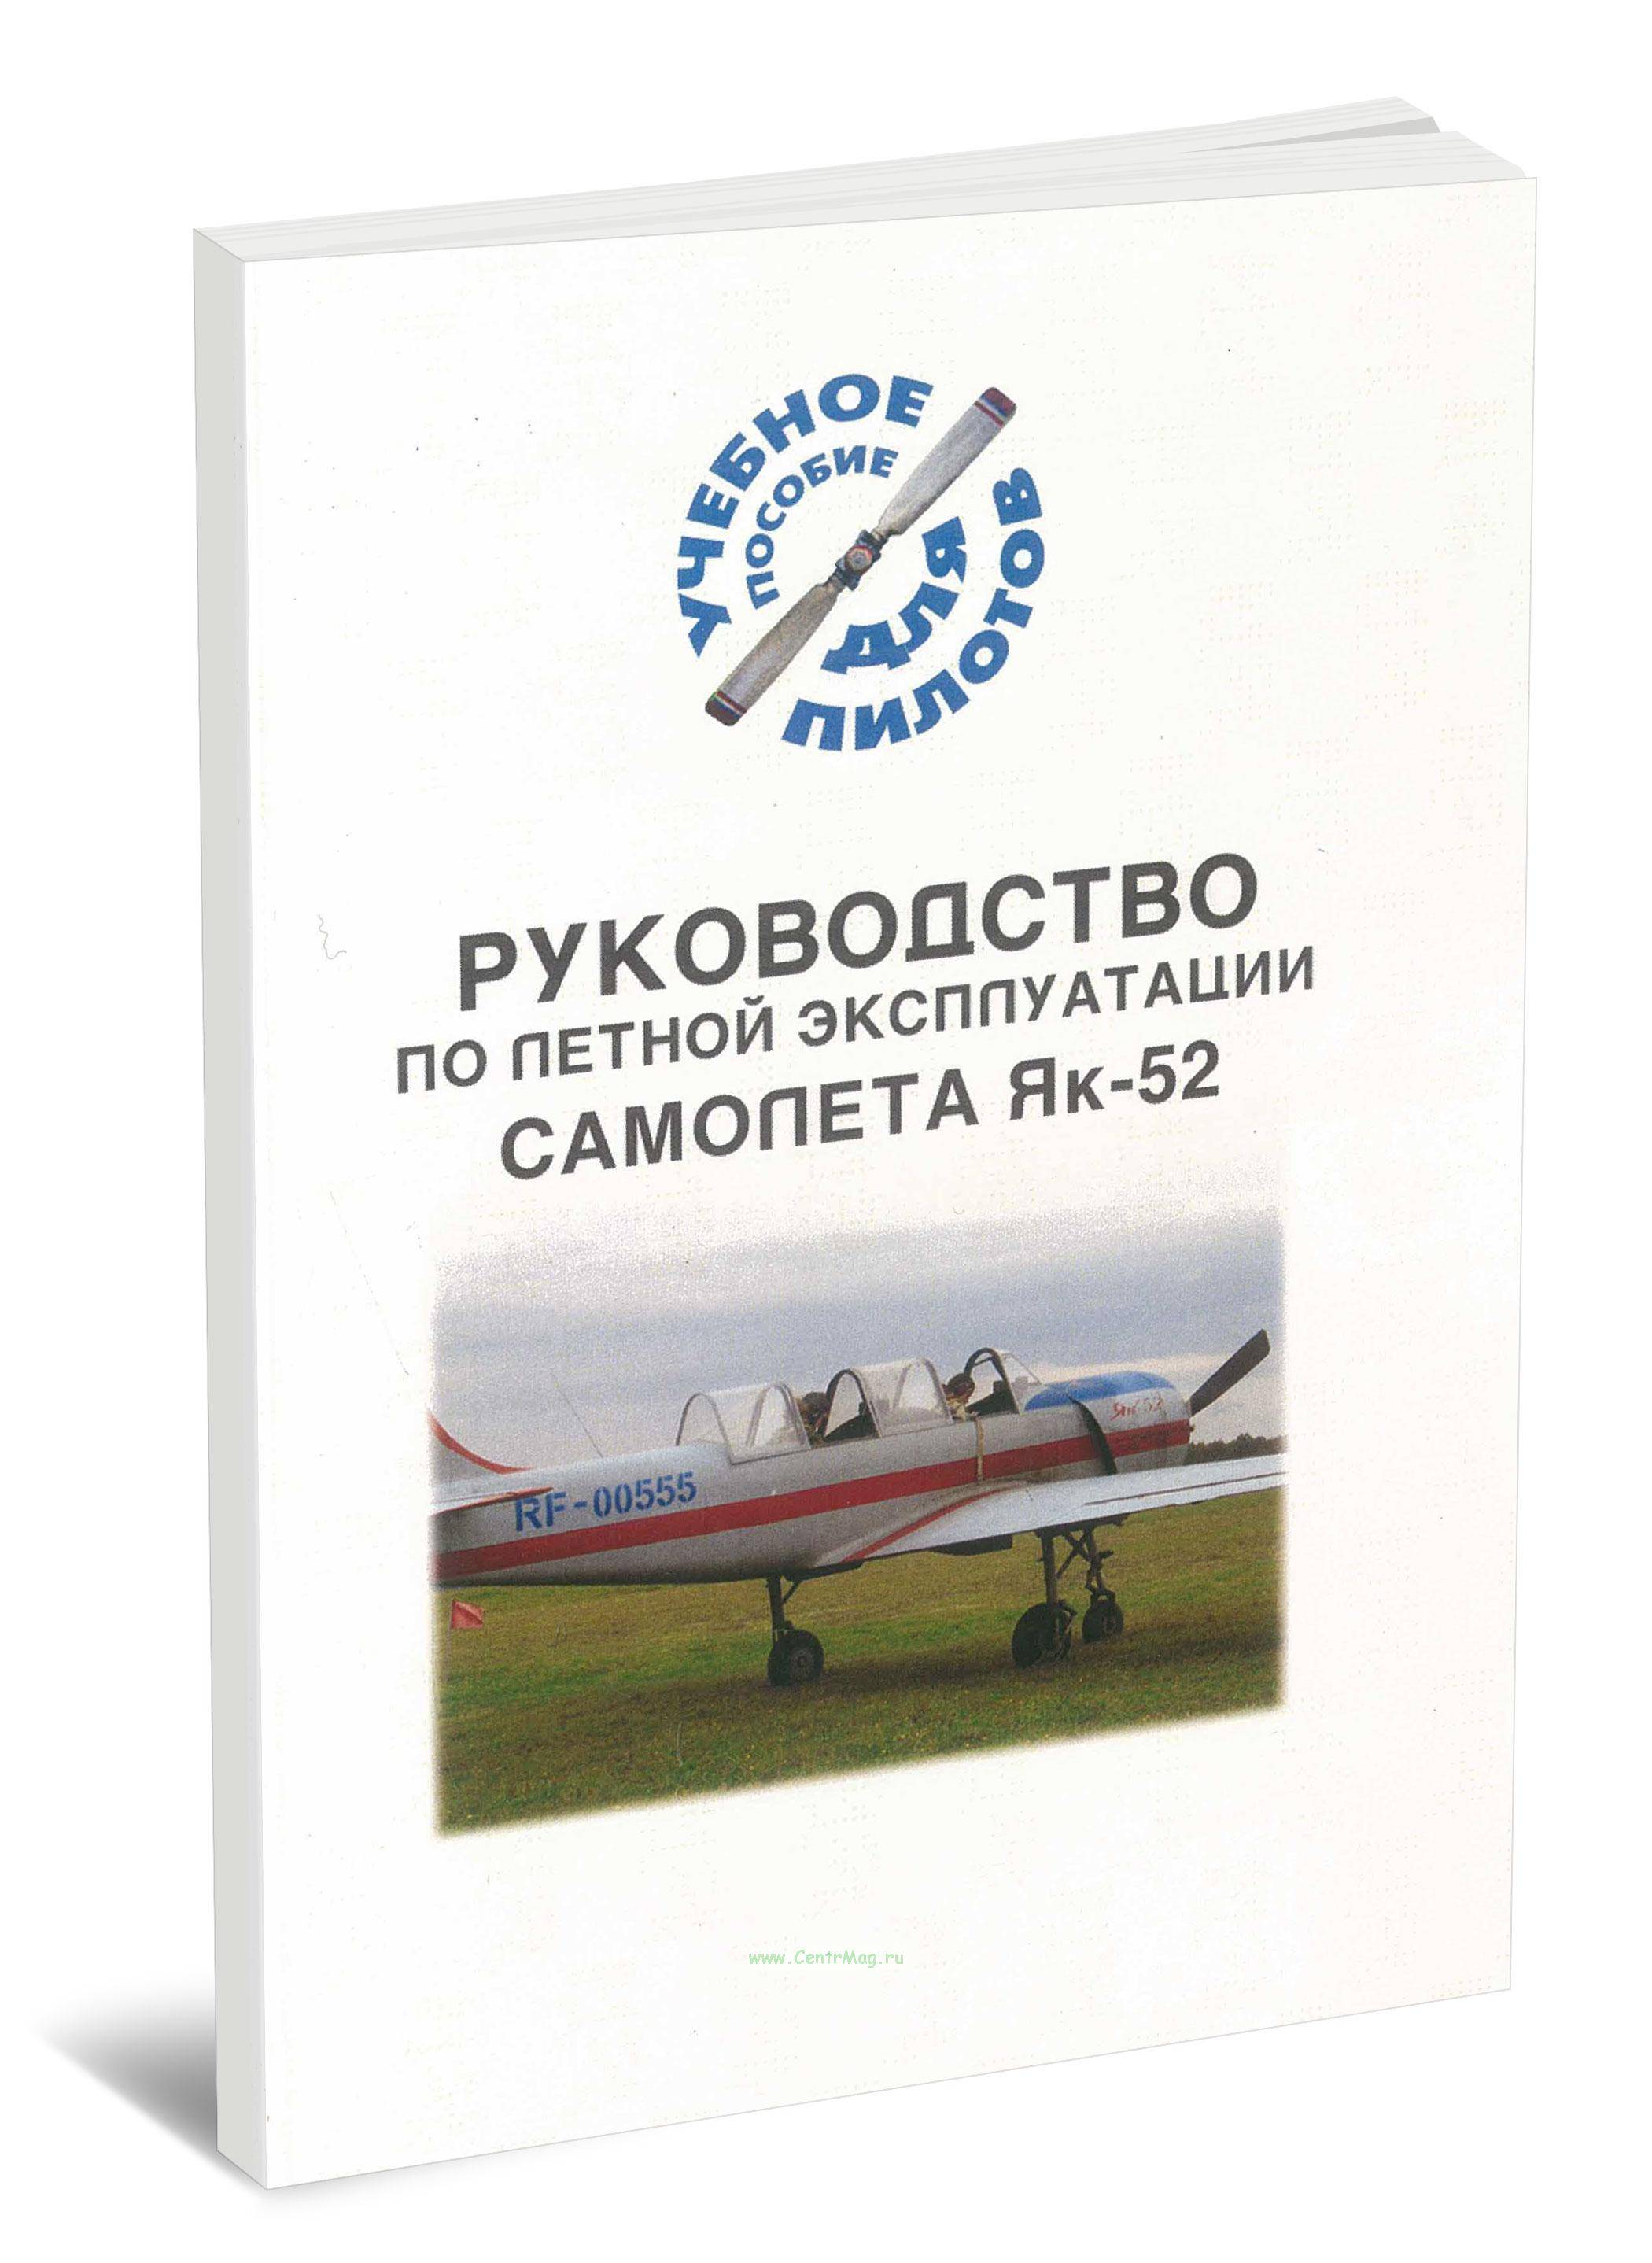 Як-52: лучший советский учебно-тренировочный самолет